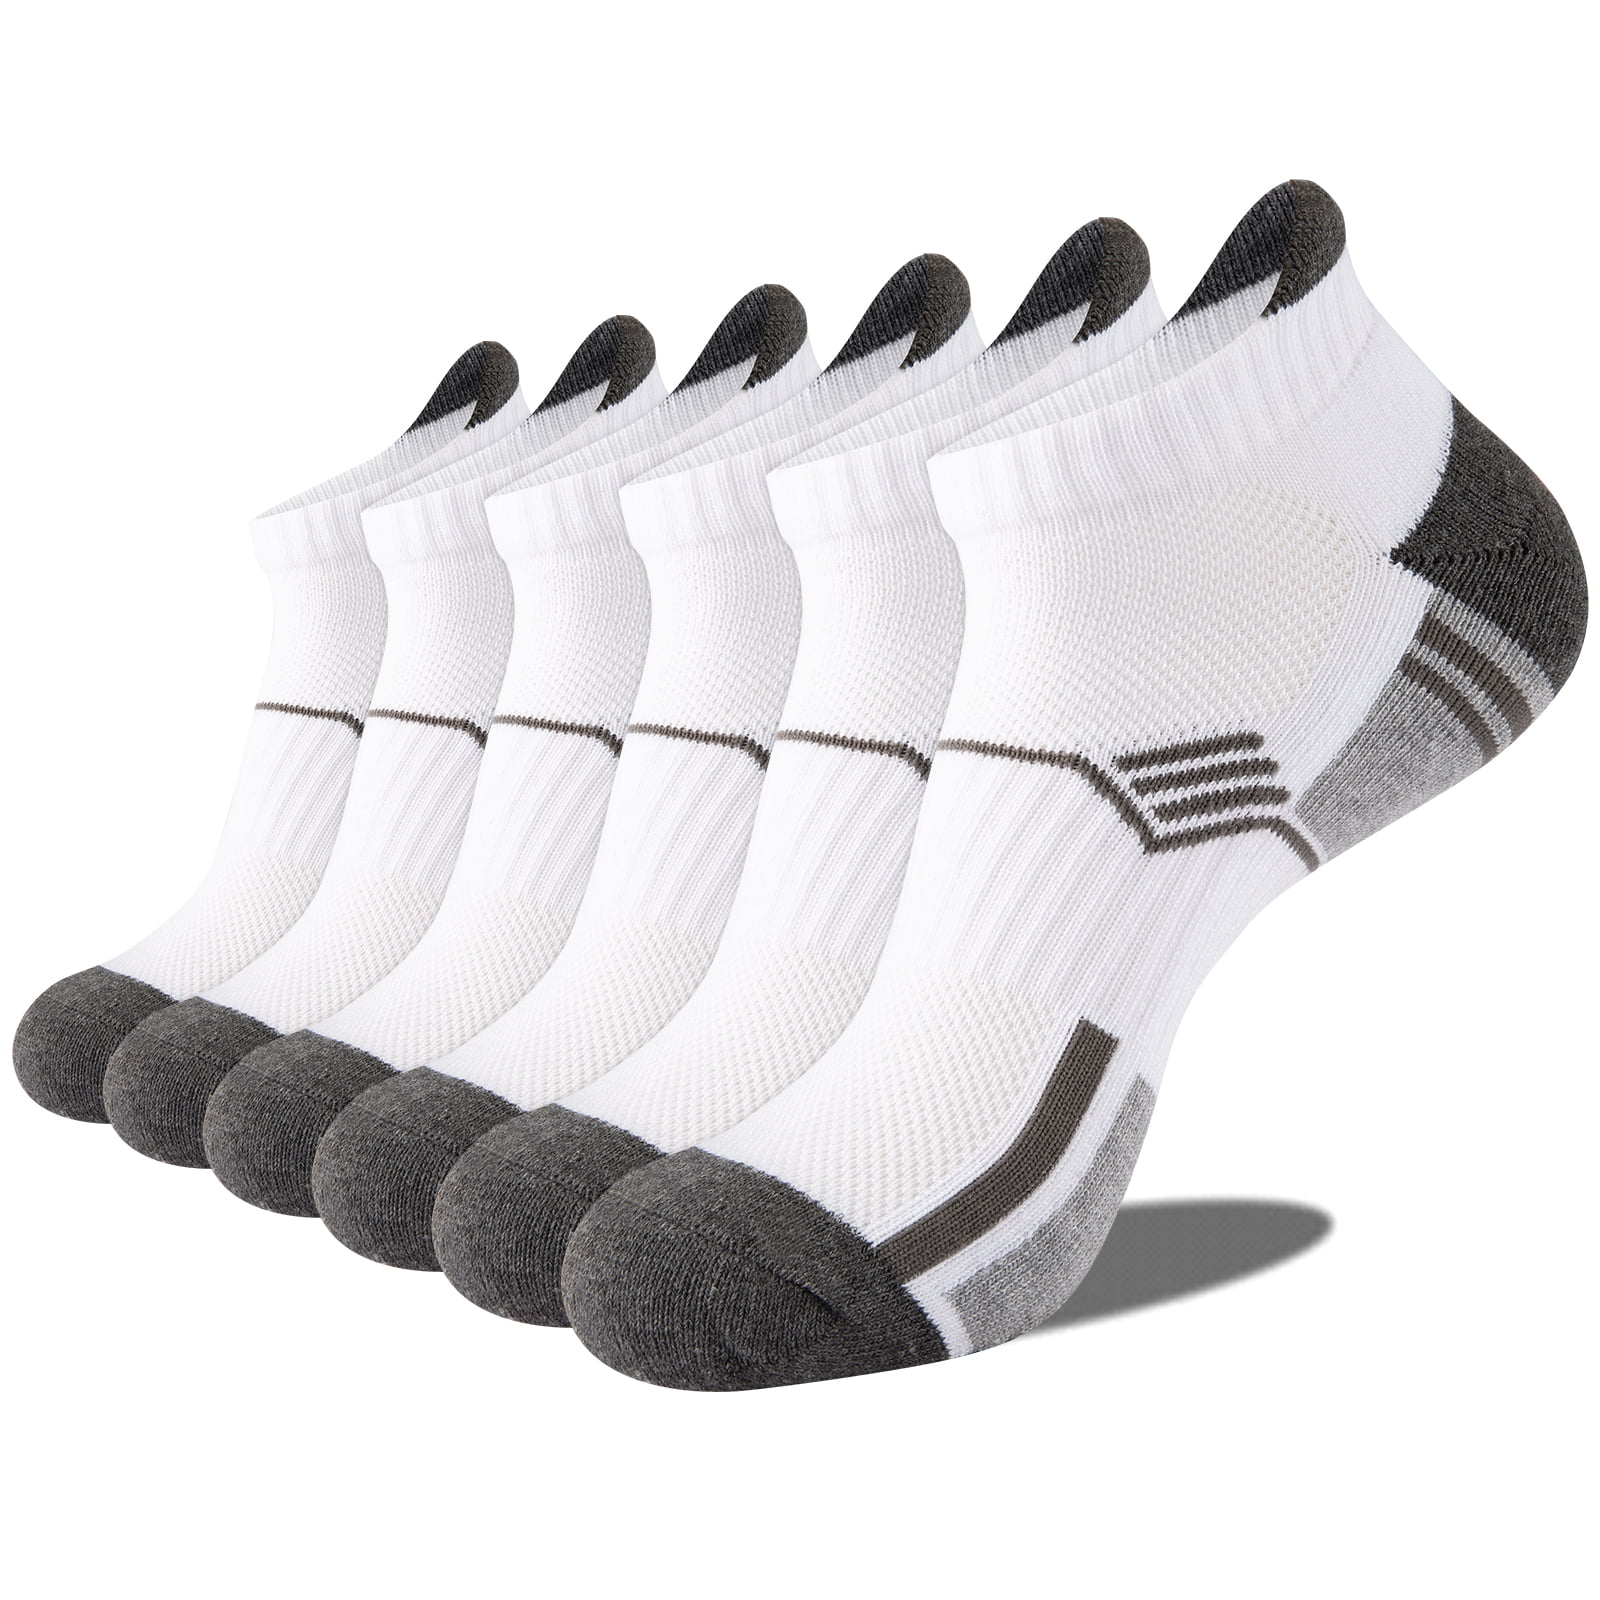 EALLCO Mens Ankle Socks Low Cut Cushioned Socks for Men Work Socks 6 ...